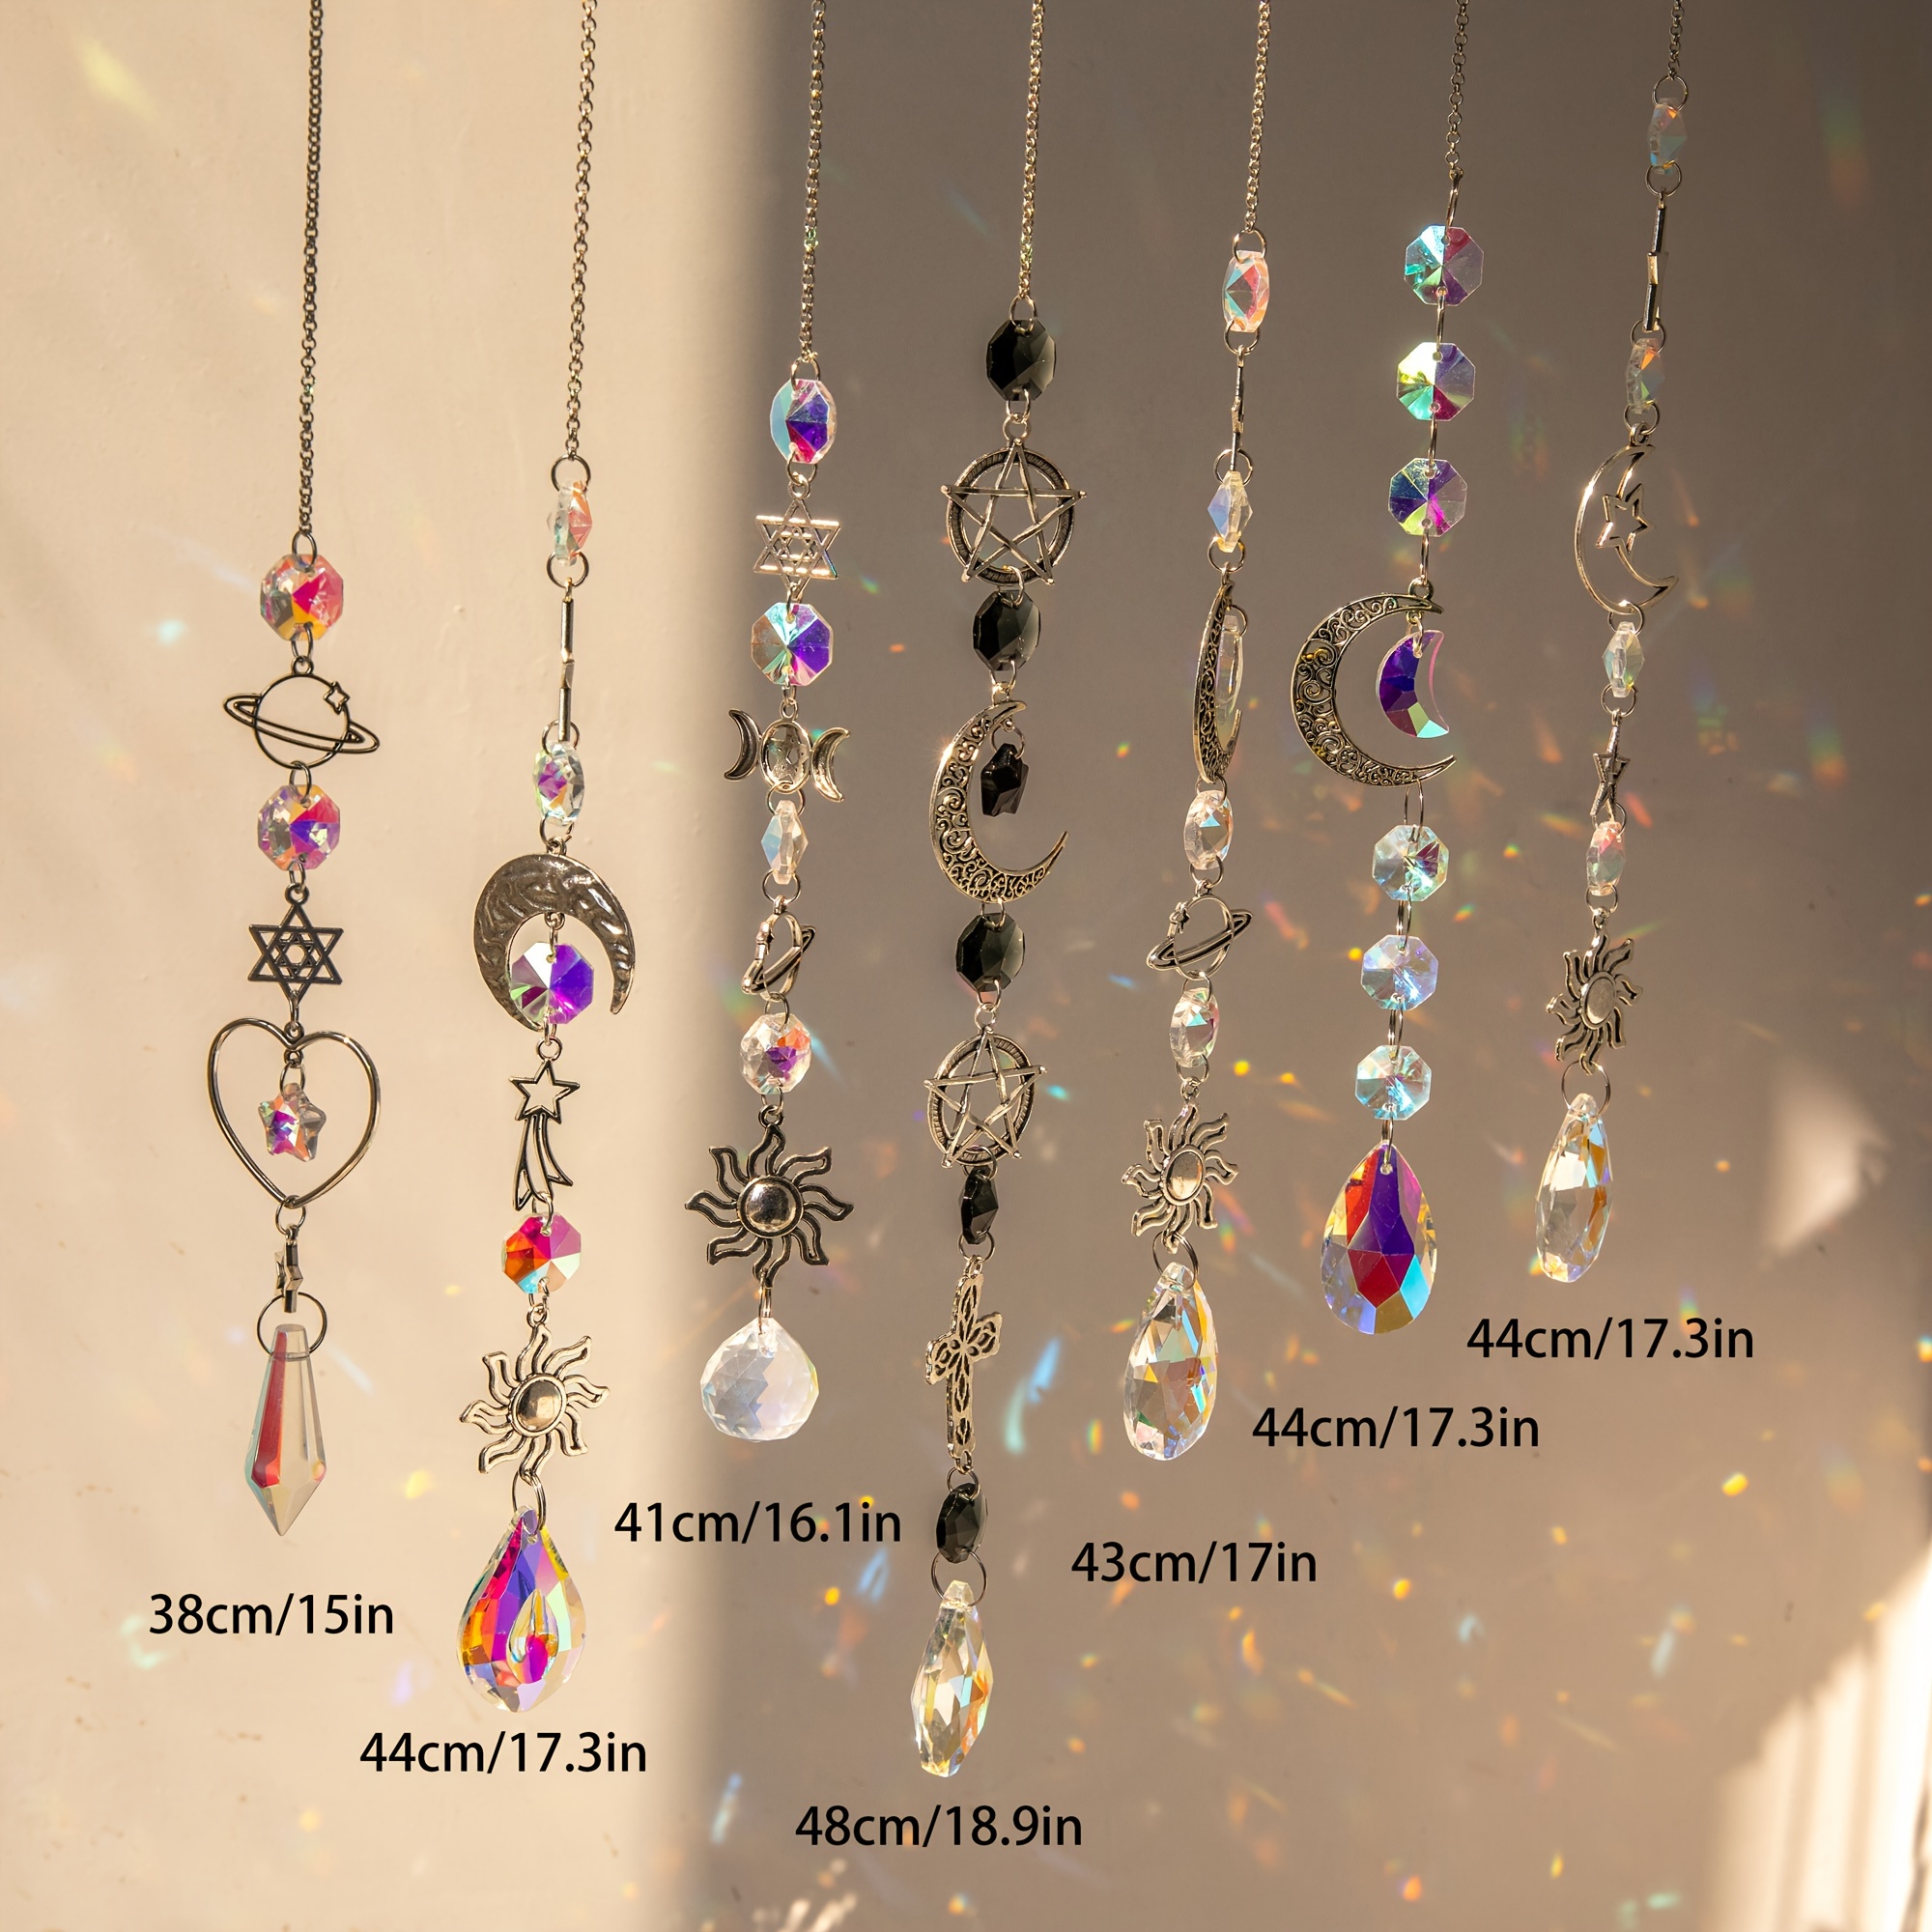 6-set Elegant Crystal Decor Hangings, Suncatcher Crystals for